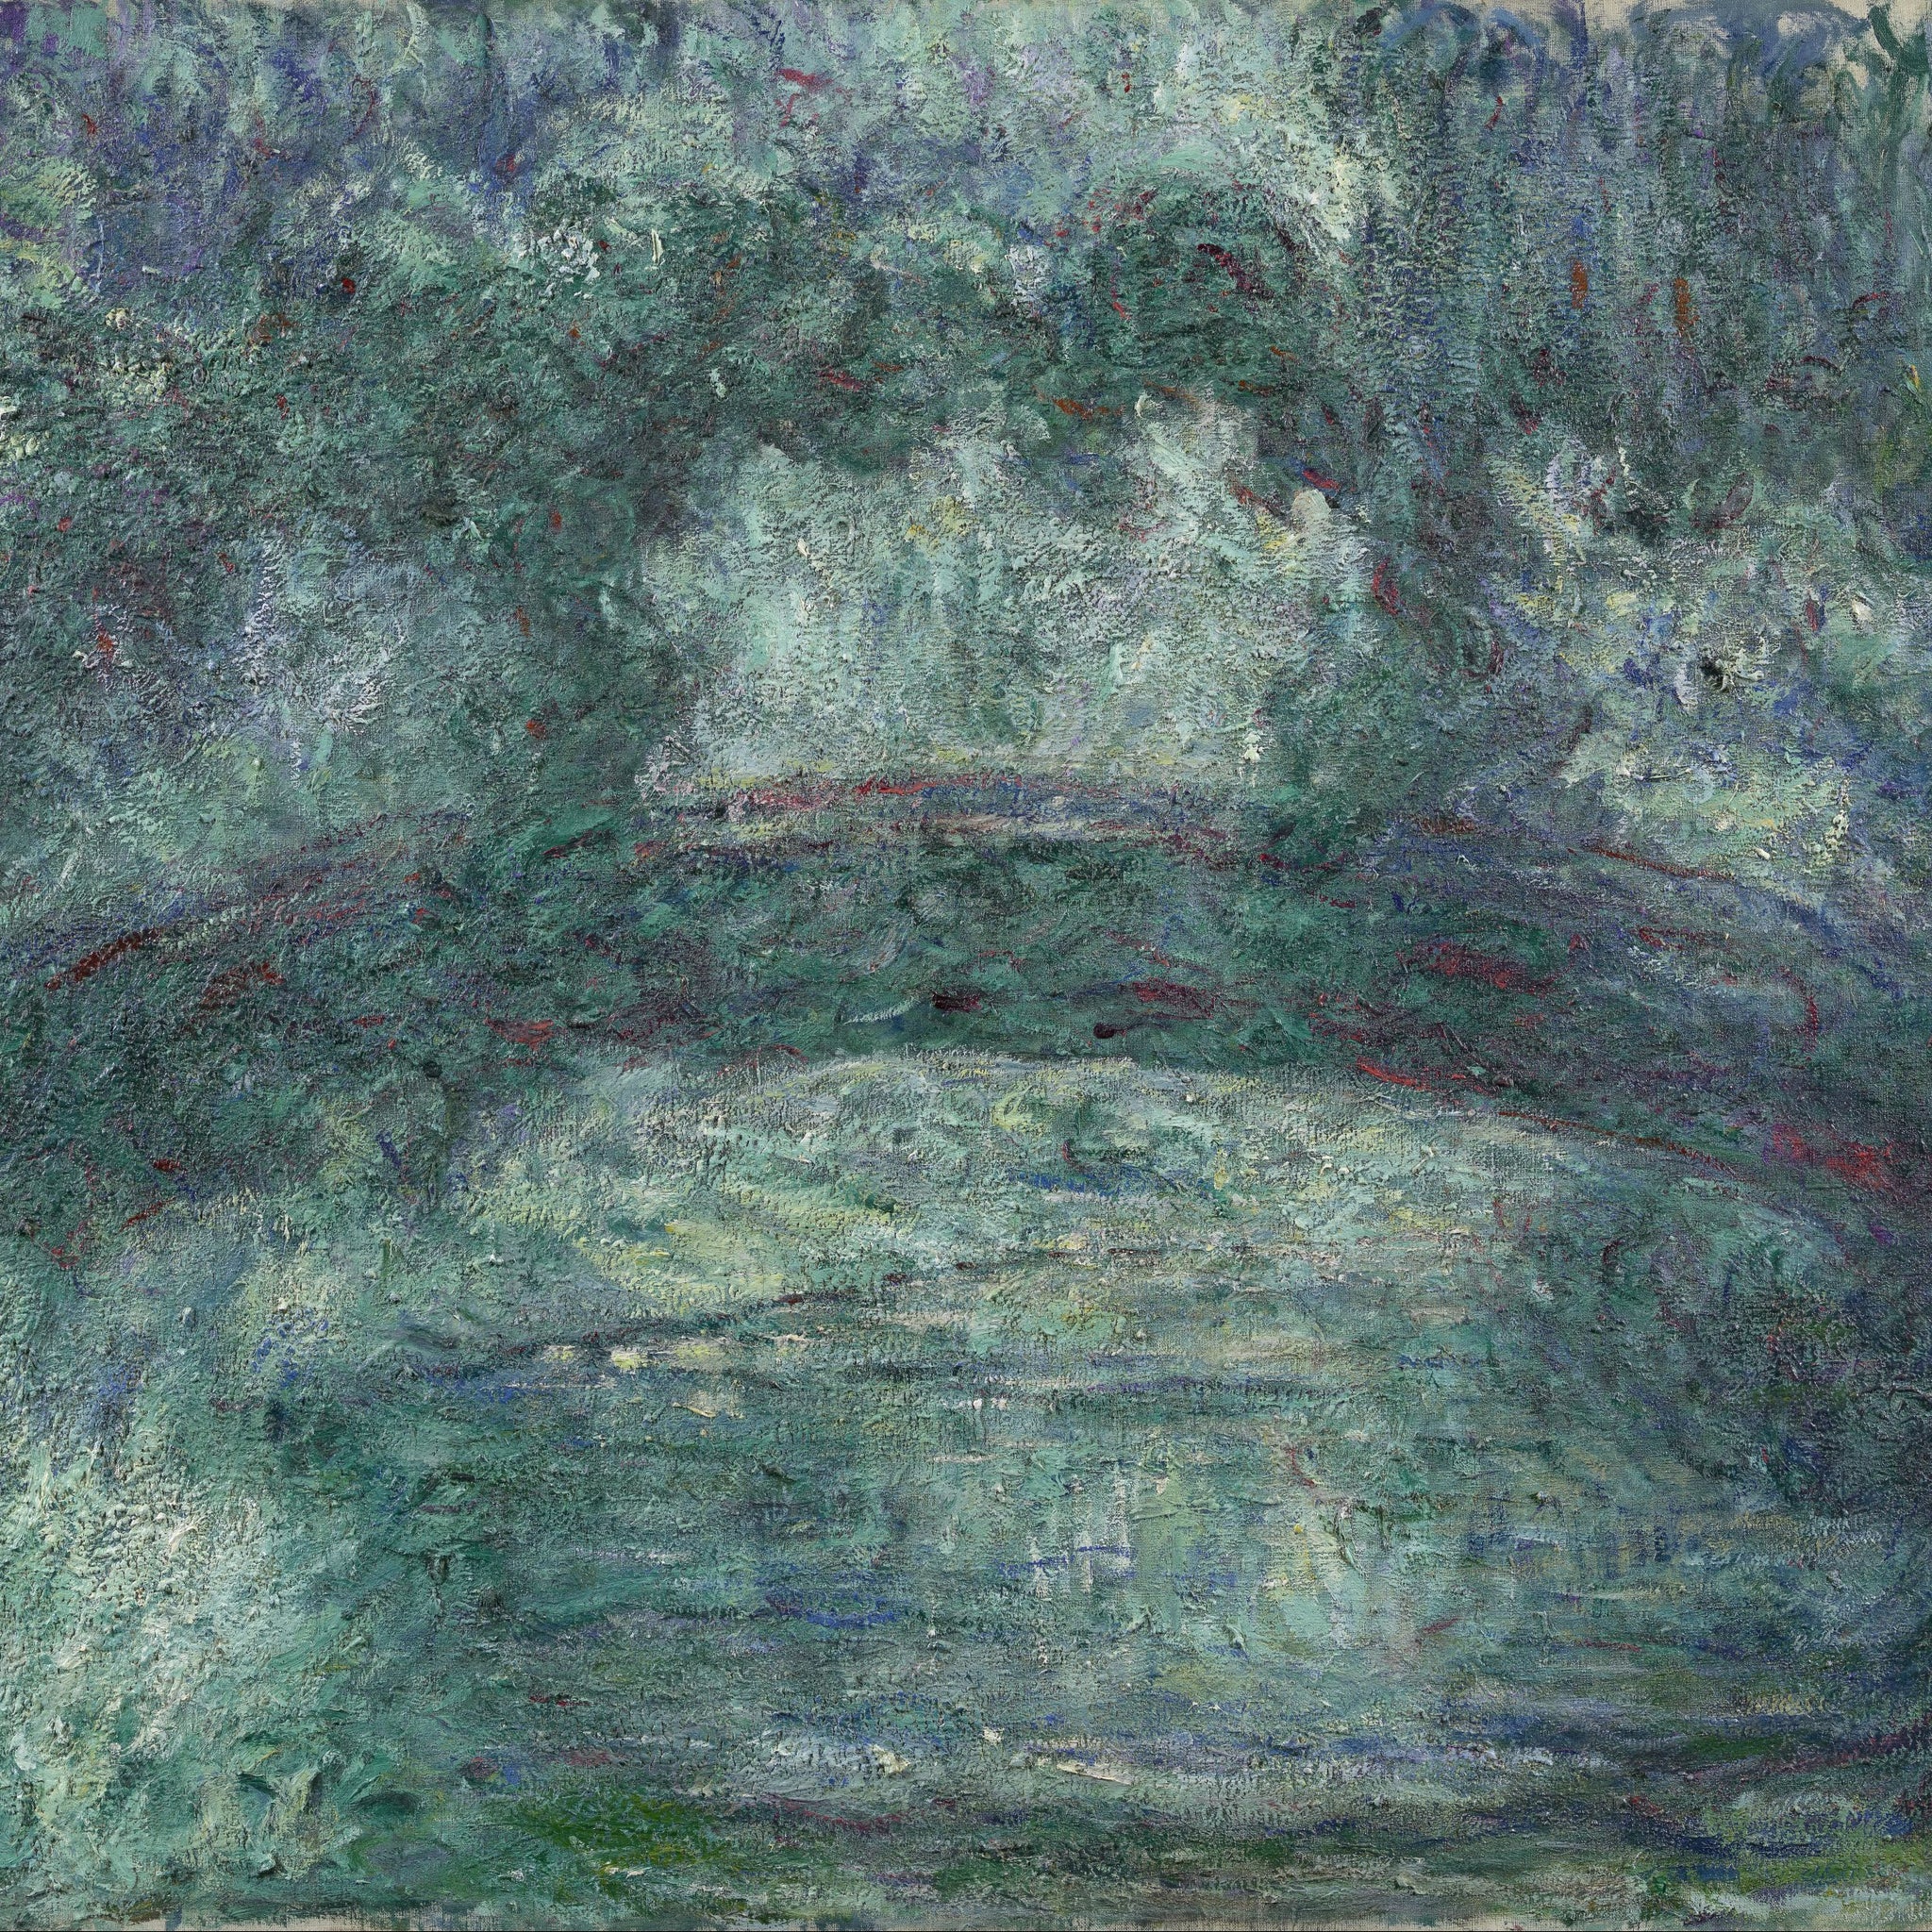 Le pont japonais,1919 - Claude Monet